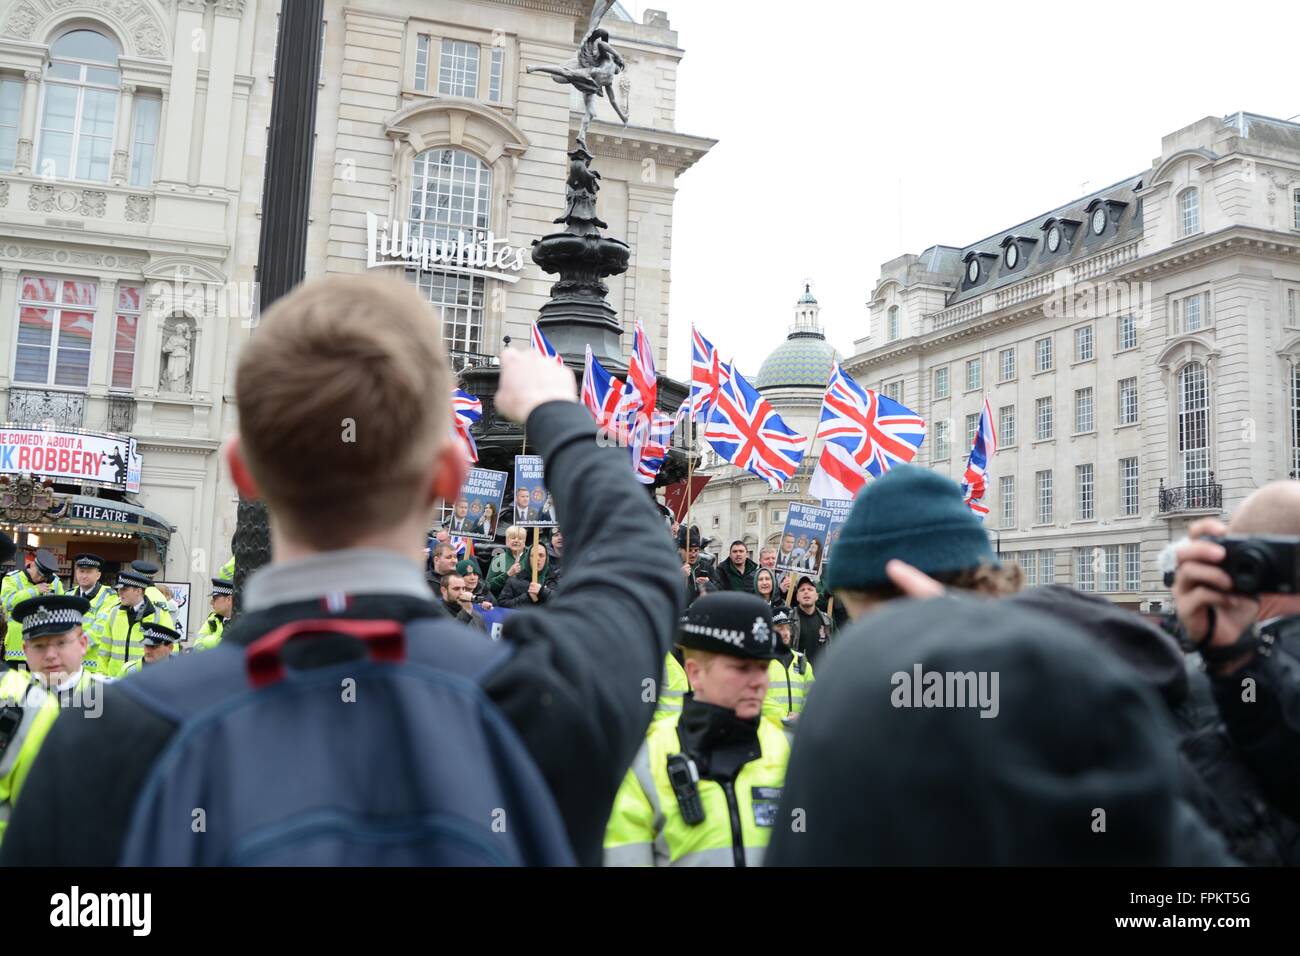 Londres, Royaume-Uni. 19 mars 2016. Pro et anti-réfugiés protestataires face à Leicester Square. Crédit : Marc Ward/Alamy Live News Banque D'Images